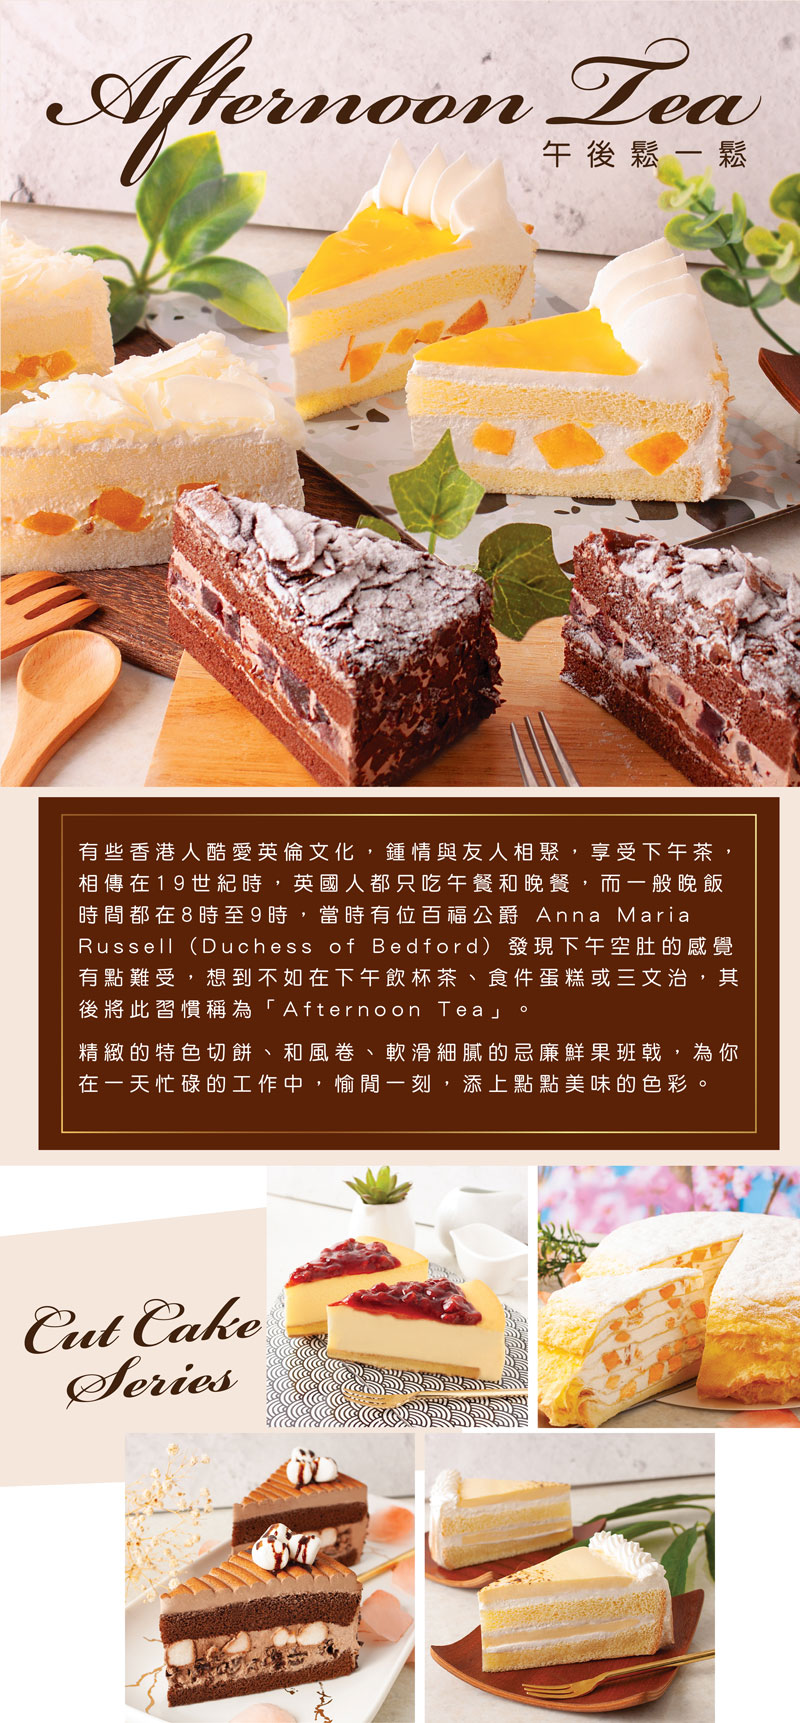 Picture切餅cut cake 下午茶